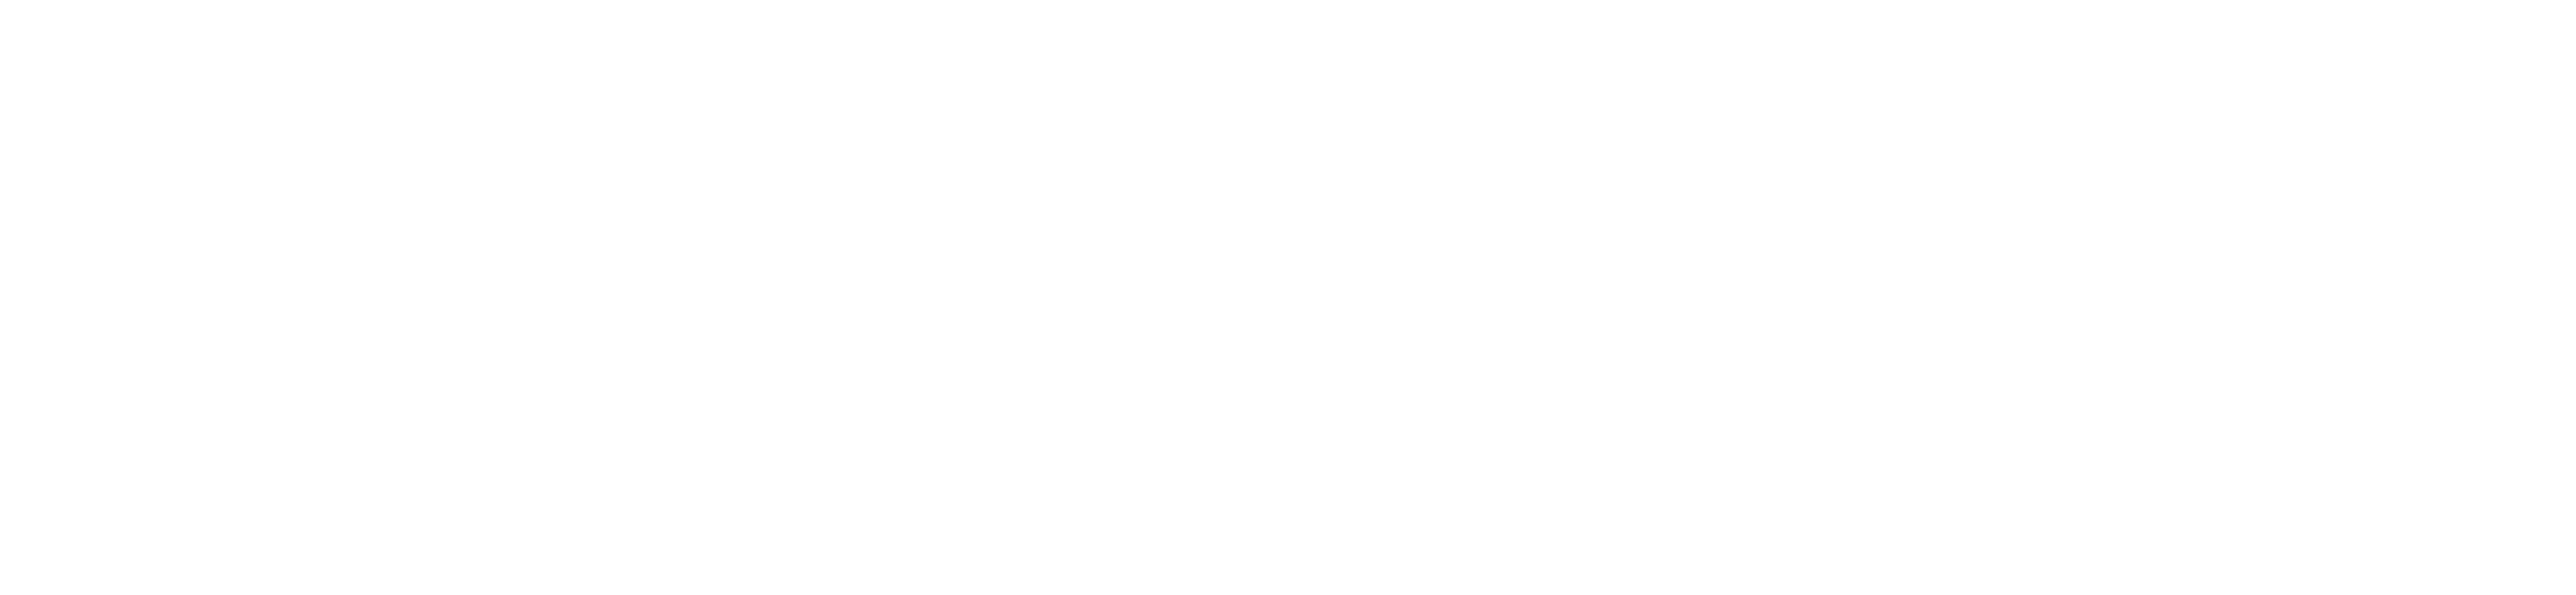 logo-acx-v3